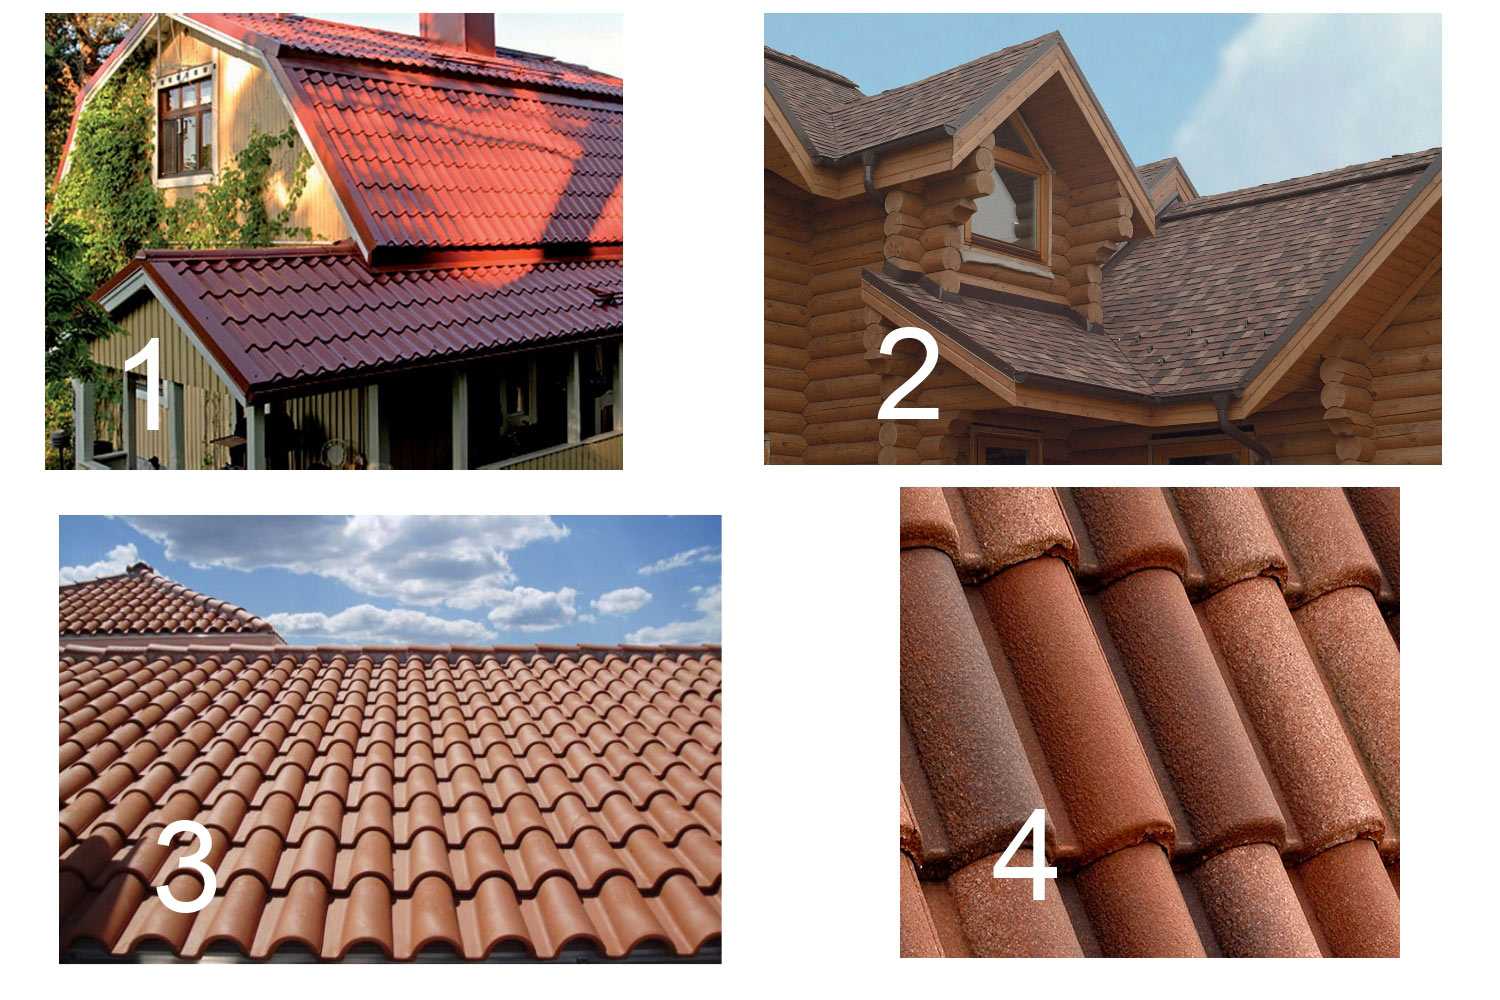 Профнастил или металлочерепица: что лучше для крыши